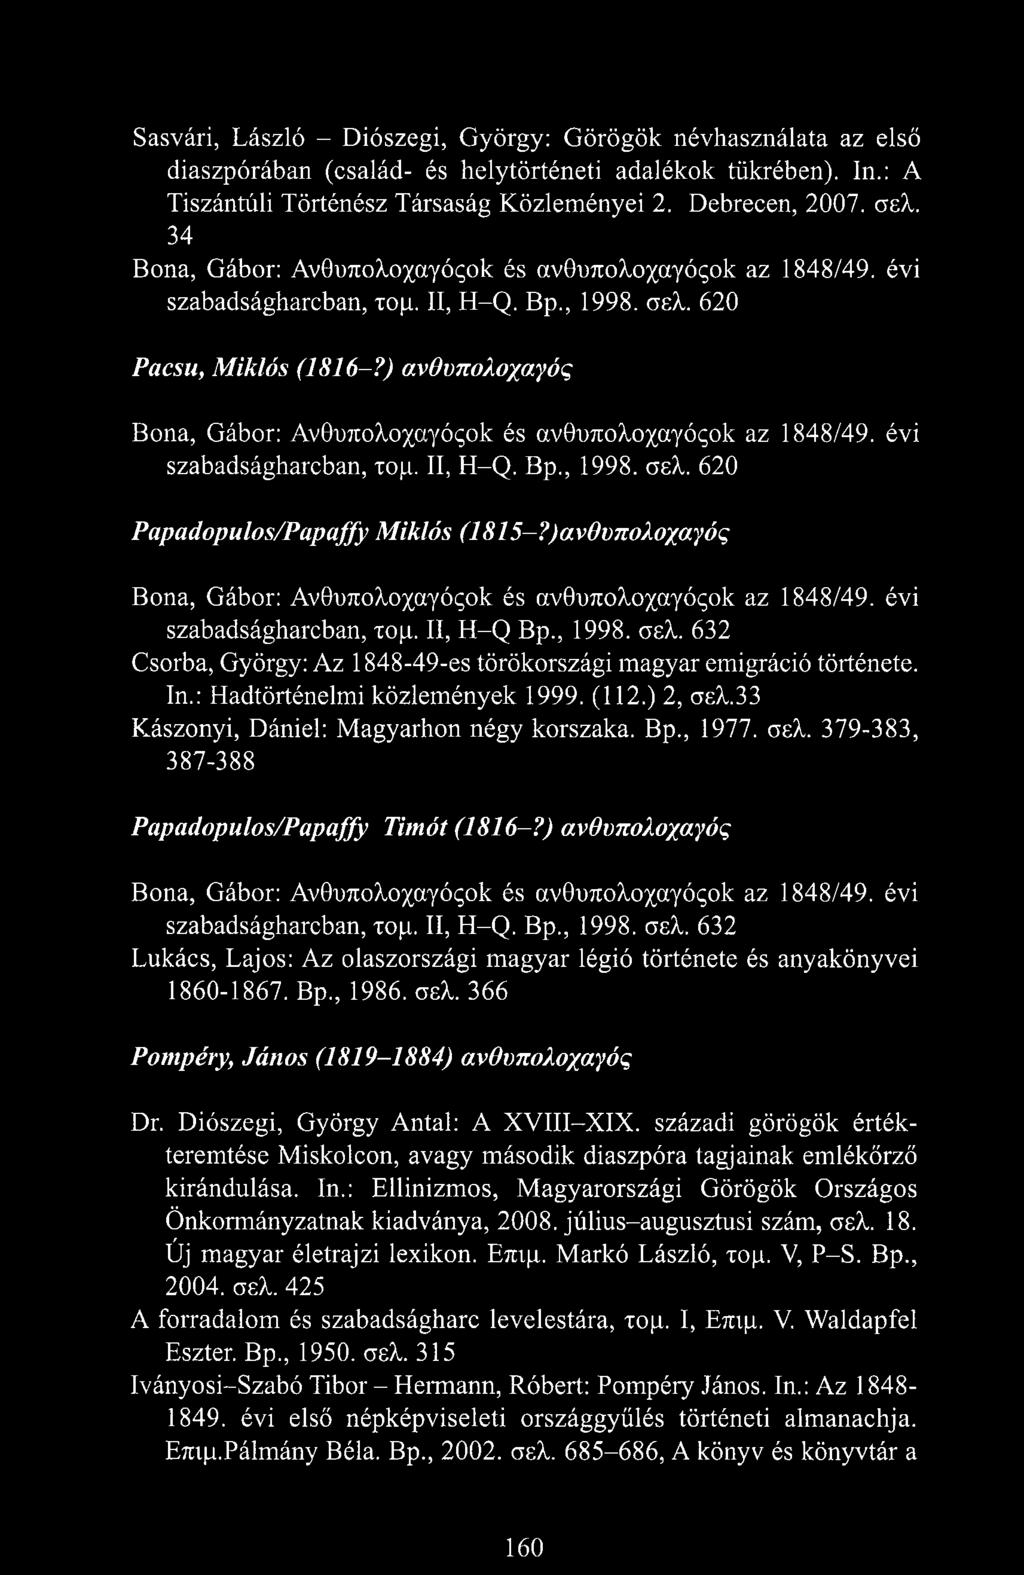 ) ανθυπολοχαγός Bona, Gábor: Av0n7toko%cq^ok és avonnokoxayóqok az 1848/49. évi szabadságharcban, τομ. II, H-Q. Bp., 1998. σελ. 620 Papadopulos/Papaffy Miklós (1815-?)α.νθυπολοχα.γός Bona, Gábor: Av0n7i;okoxaYÓqok és av0u7i;okoxayóqok az 1848/49.